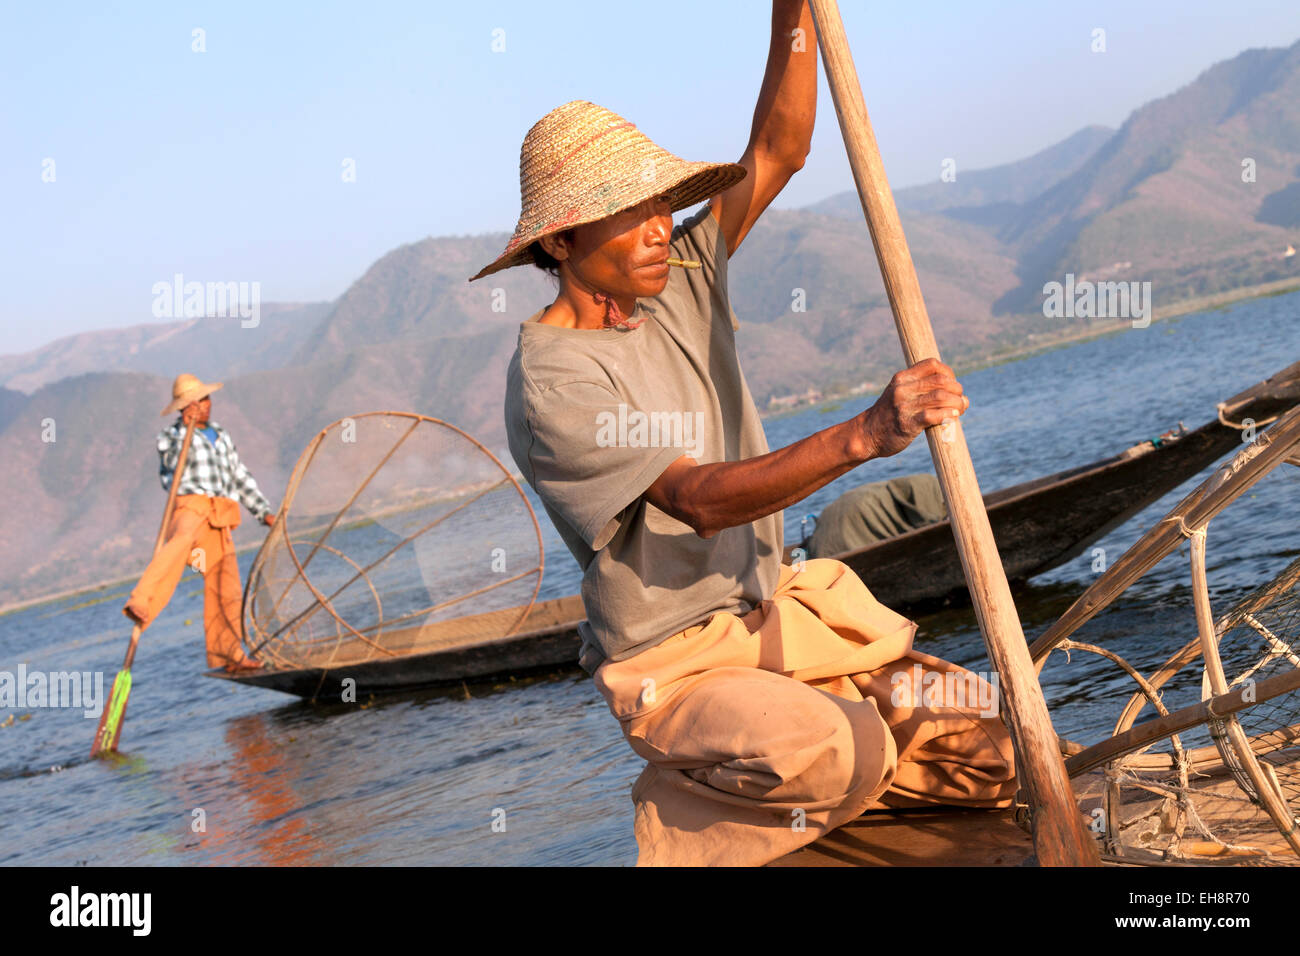 In prossimità dei due pescatori sul Lago Inle, Myanmar ( Birmania ), Asia Foto Stock